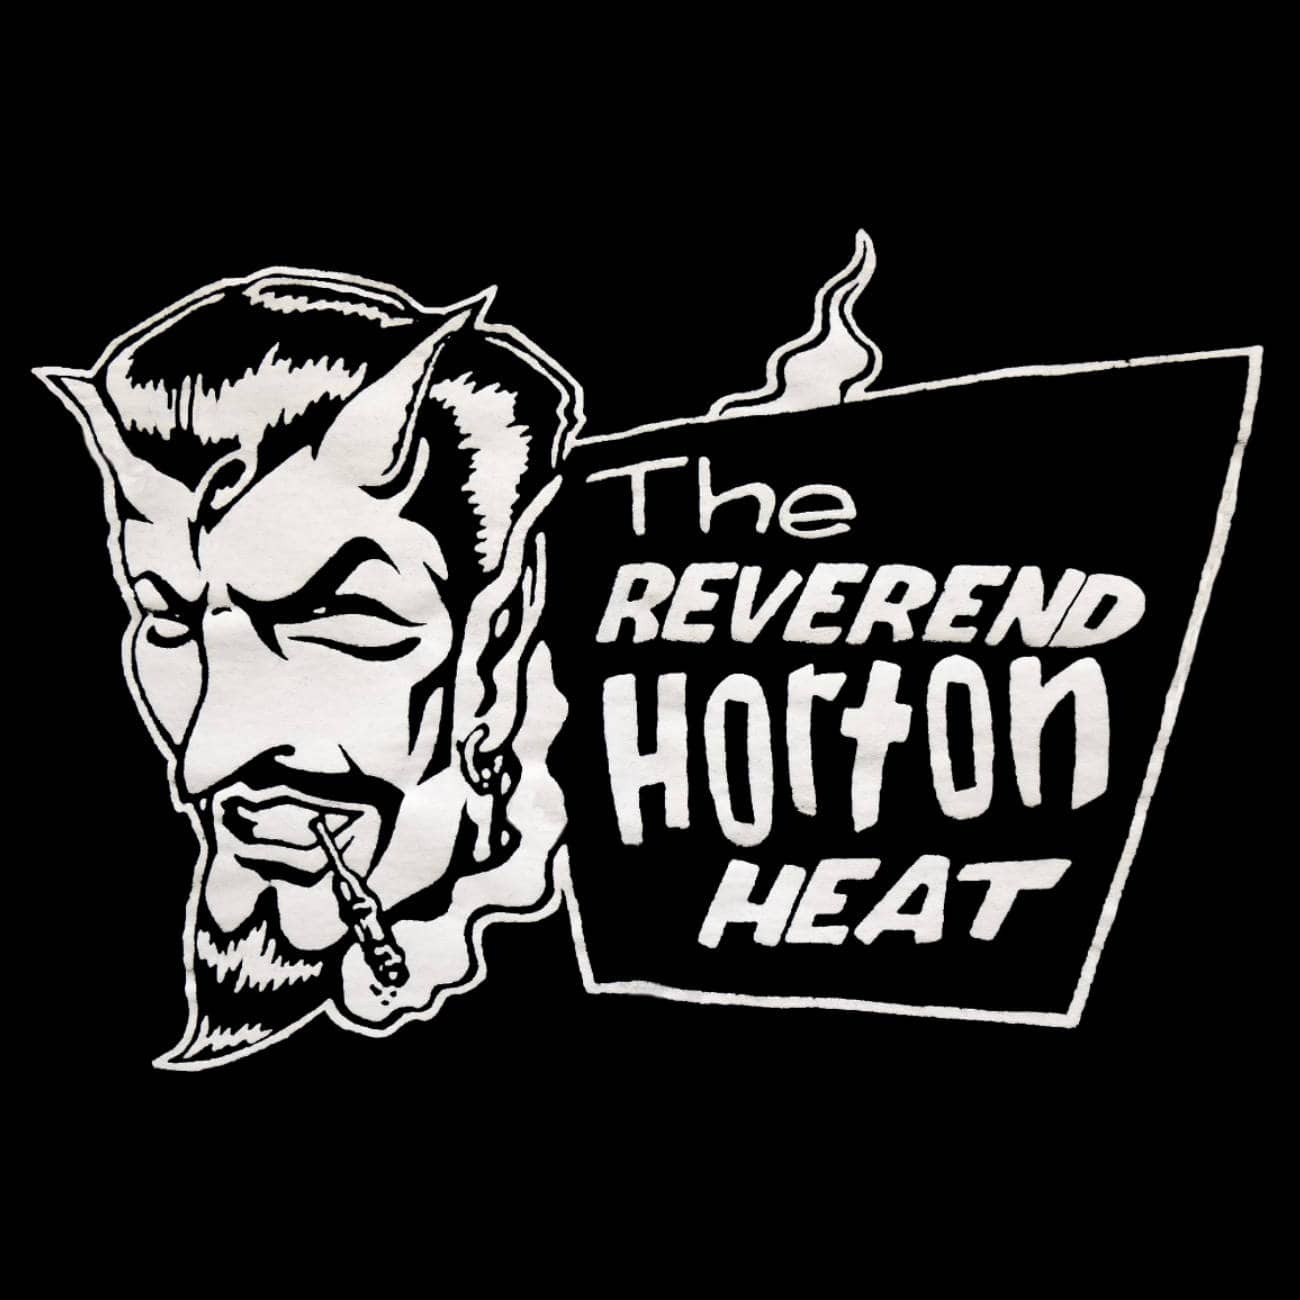 (c) Reverendhortonheat.com